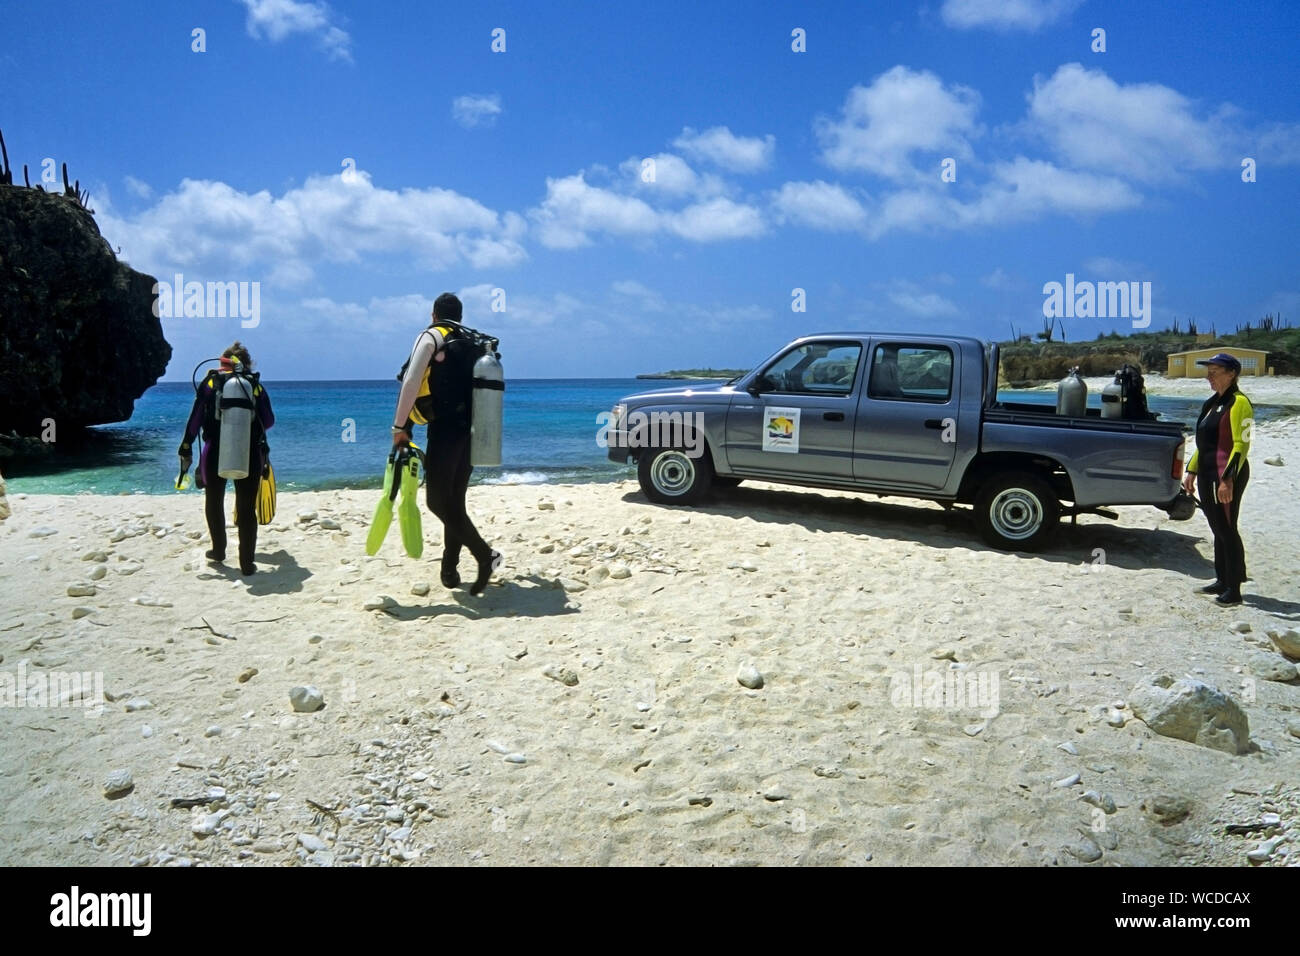 Shore, immersioni scuba diver presso la spiaggia, la maggior parte dei siti di immersione sono raggiungibili da riva, Bonaire, Antille olandesi Foto Stock